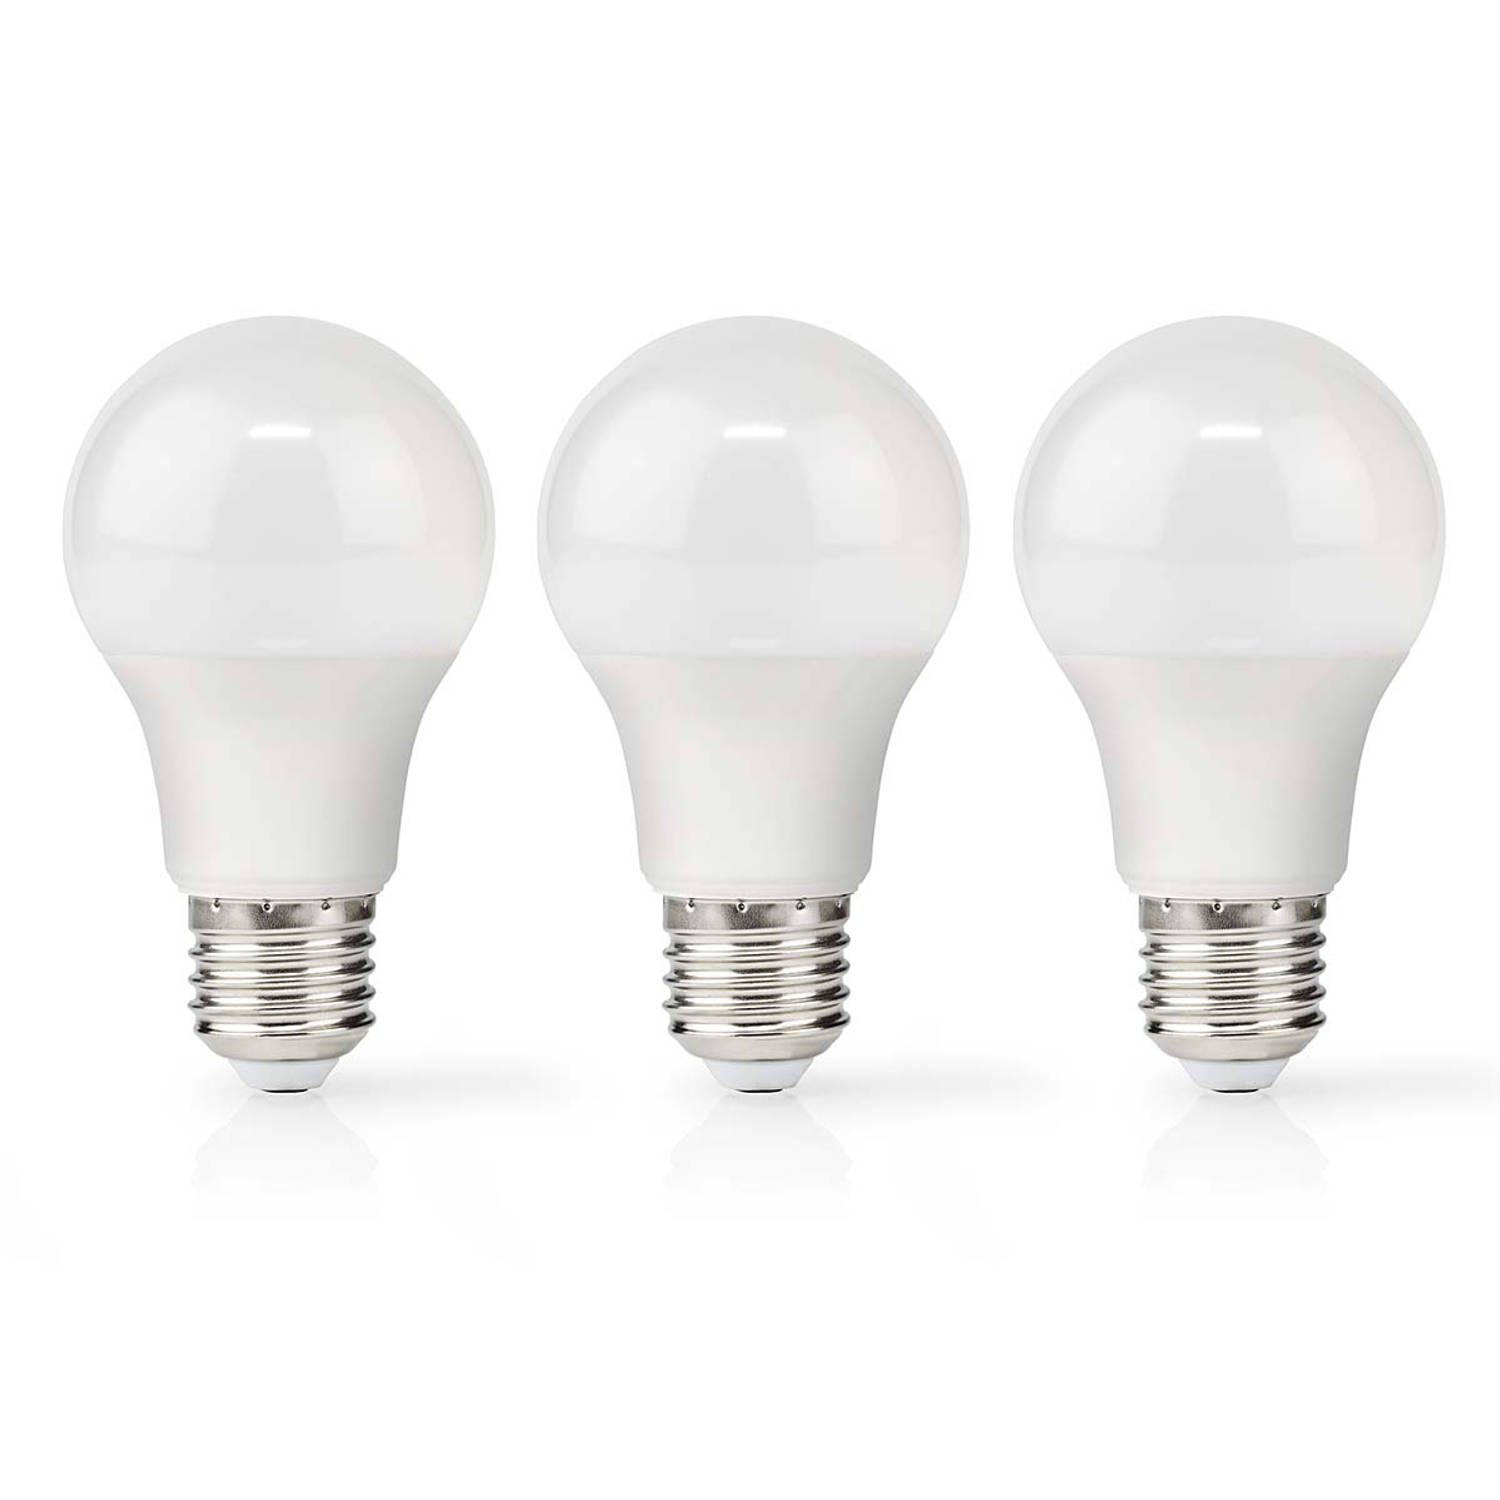 LED-Lamp E27 | A60 | 8.5 W | 806 lm | 2700 K | 3 stuks | 1 stuks LBE27A602P3